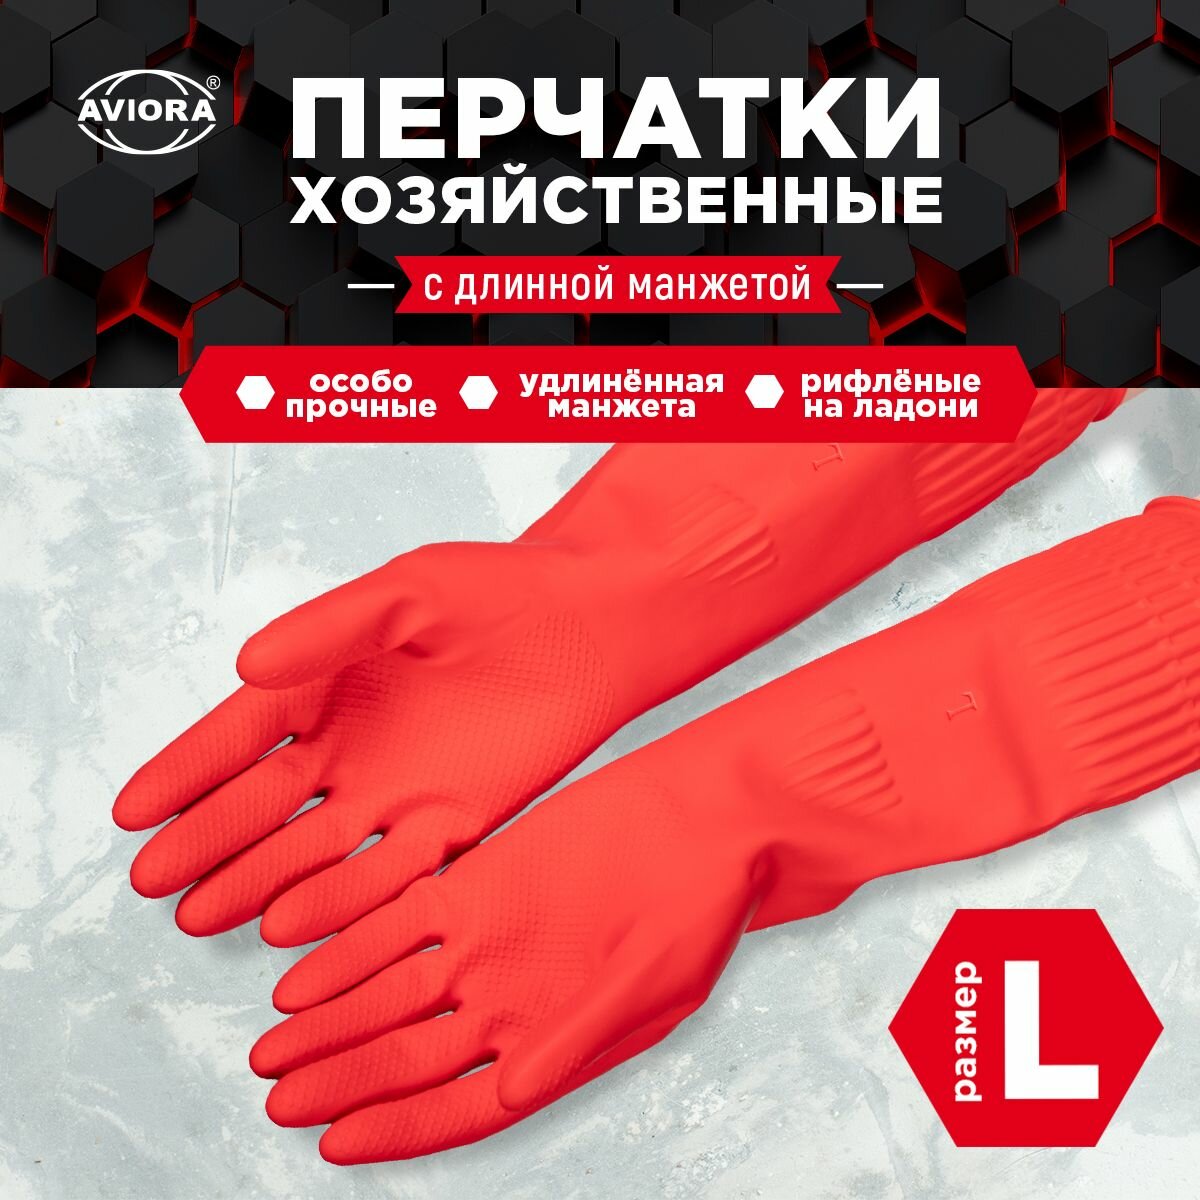 Хозяйственные перчатки резиновые с удлиненной манжетой размер L AVIORA (402-940)